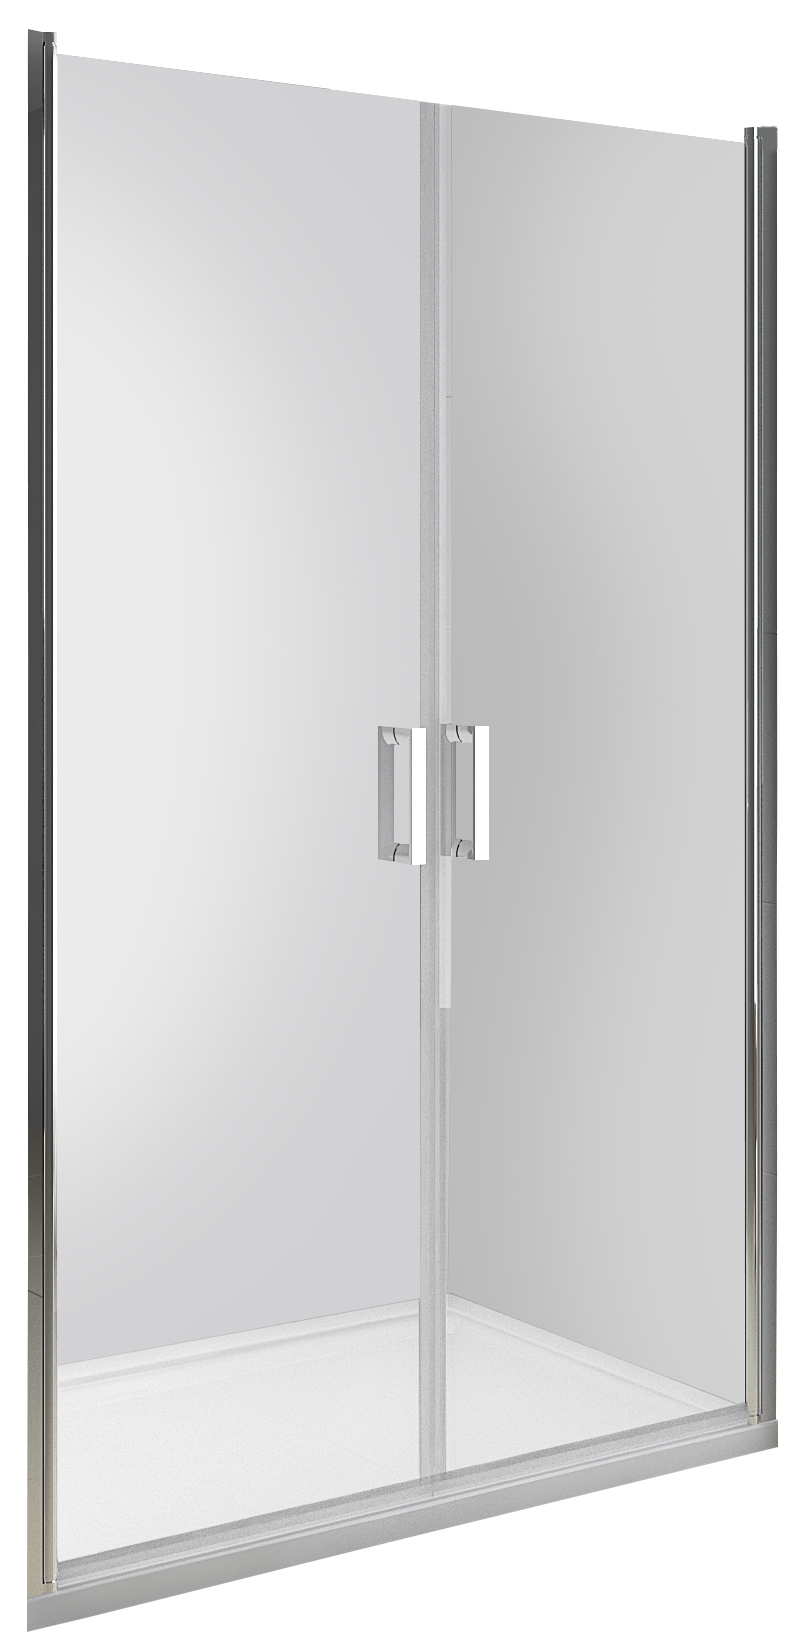 Drzwi prysznicowe wnękowe uchylne 90x190 cm DUO ACTIVE dwuskrzydłowe (VL.642-4.90)